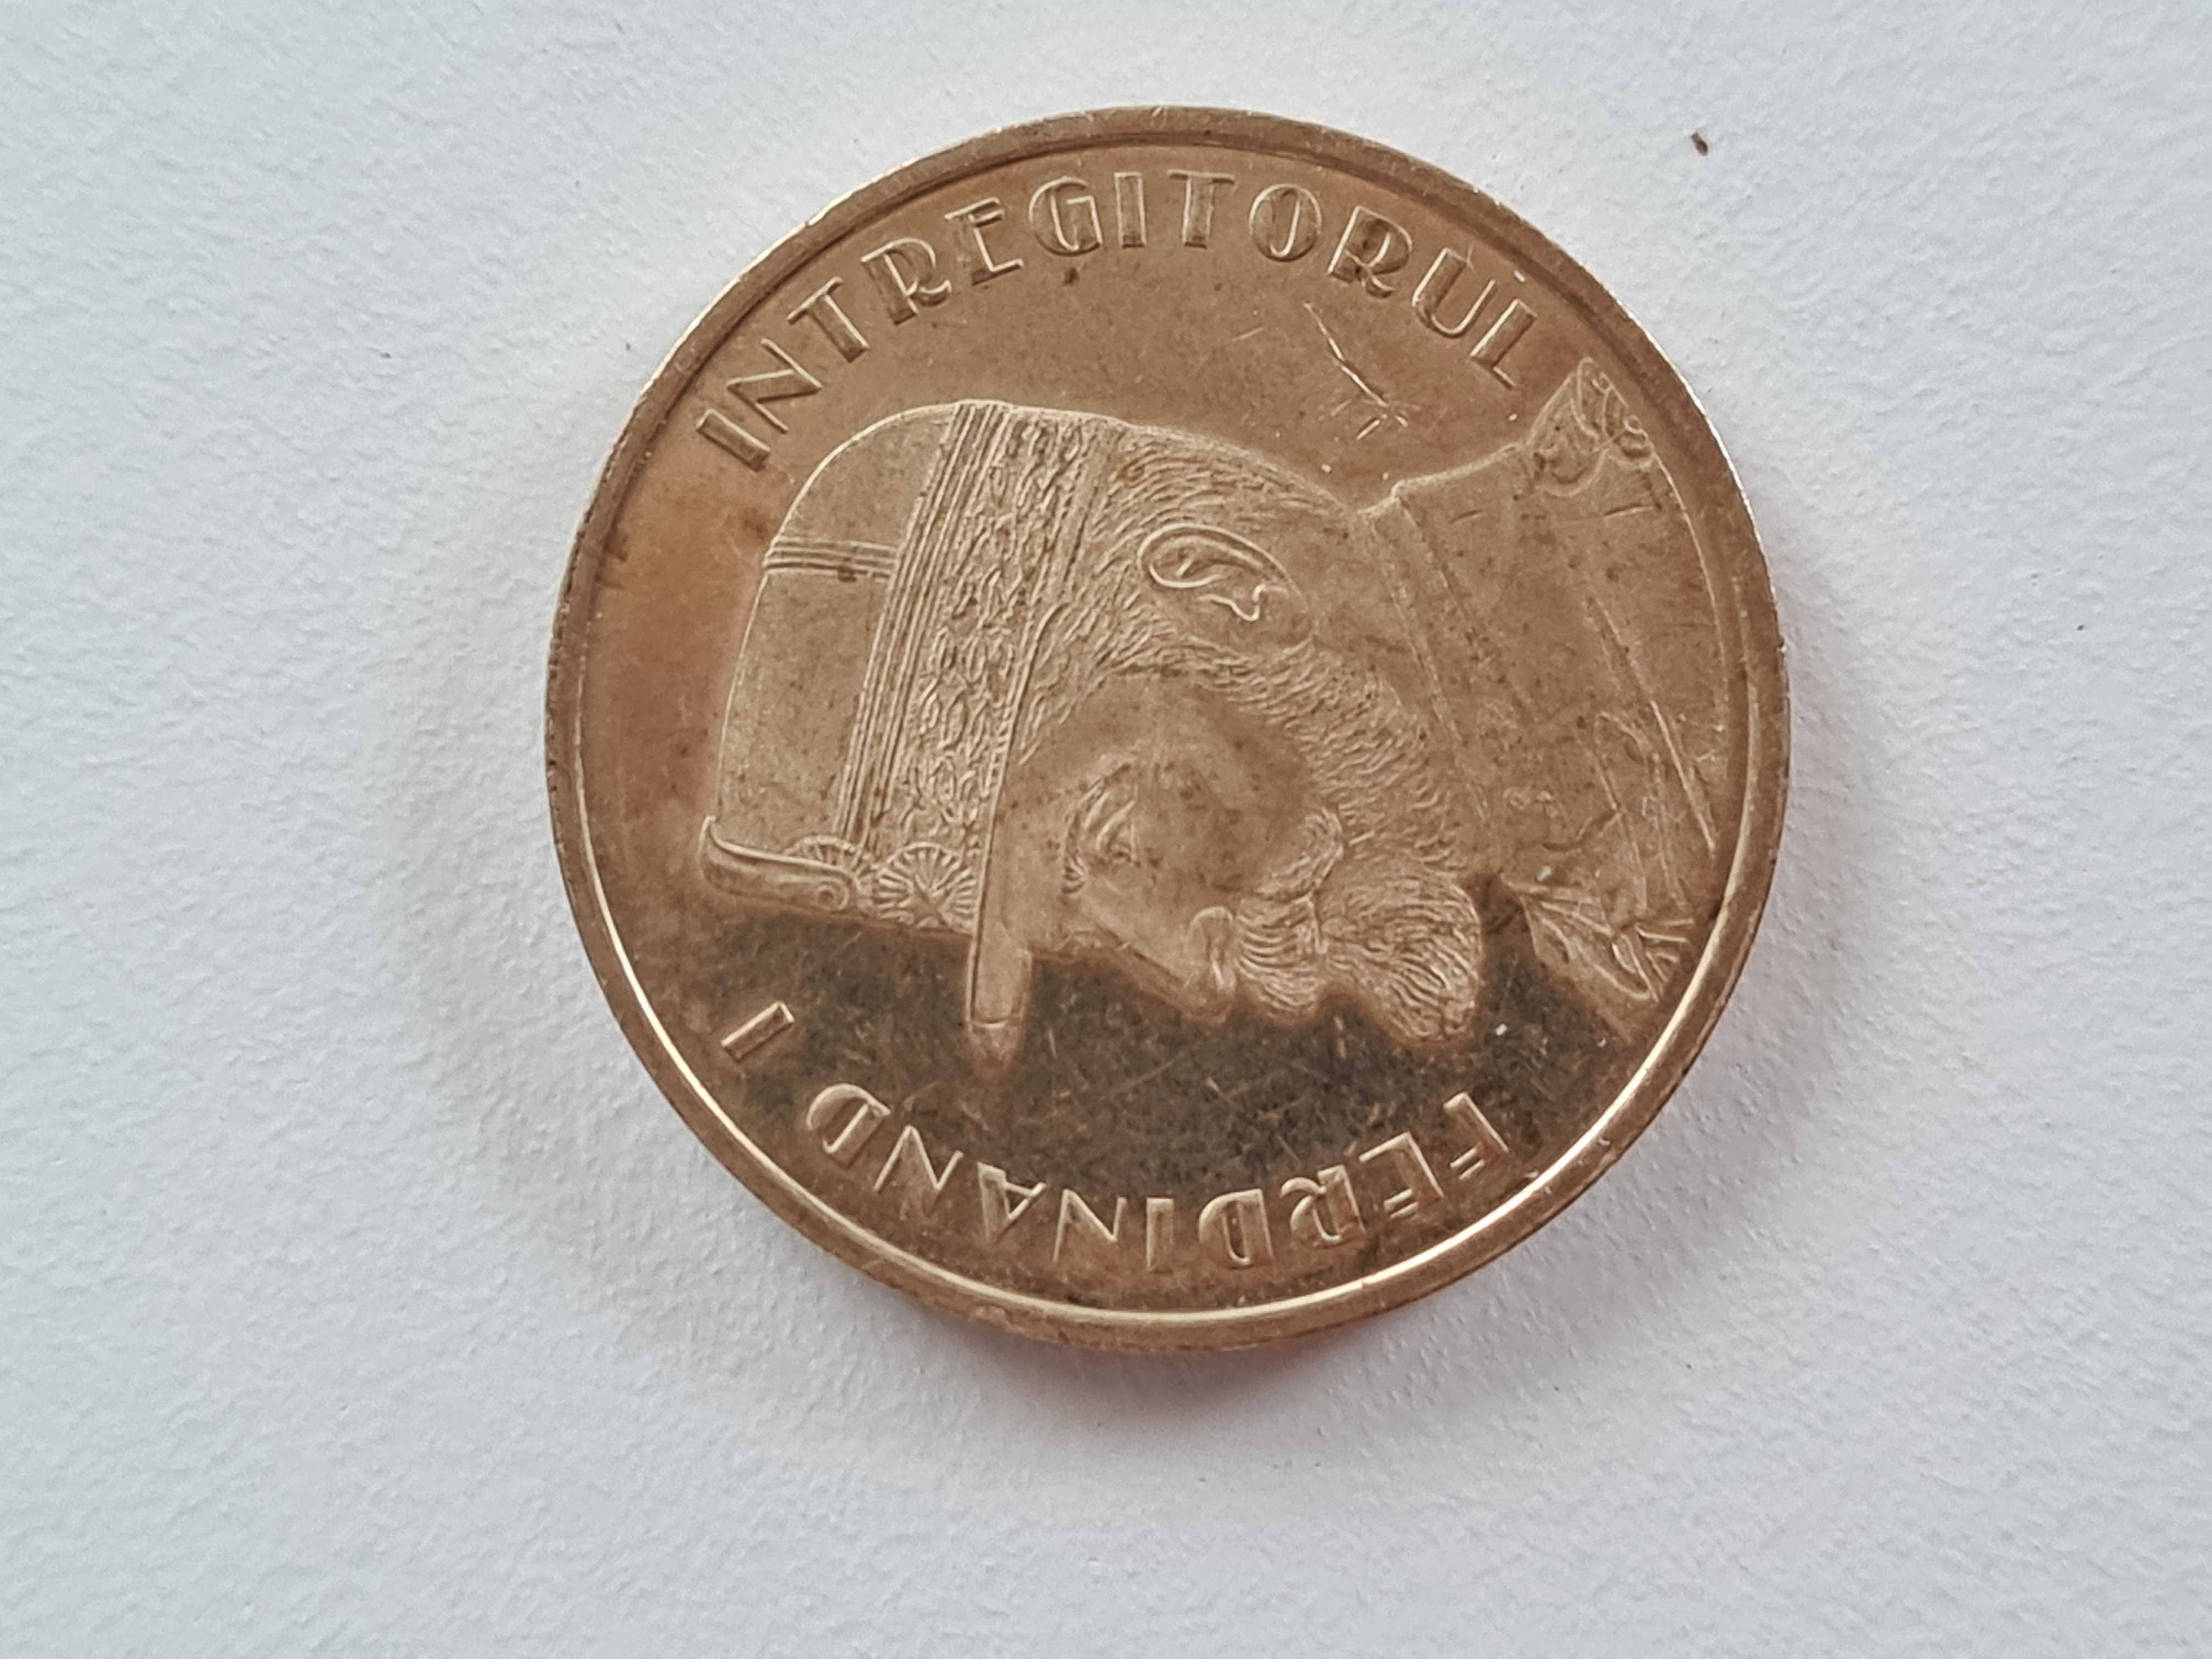 Monede vechi, romanesti si euro